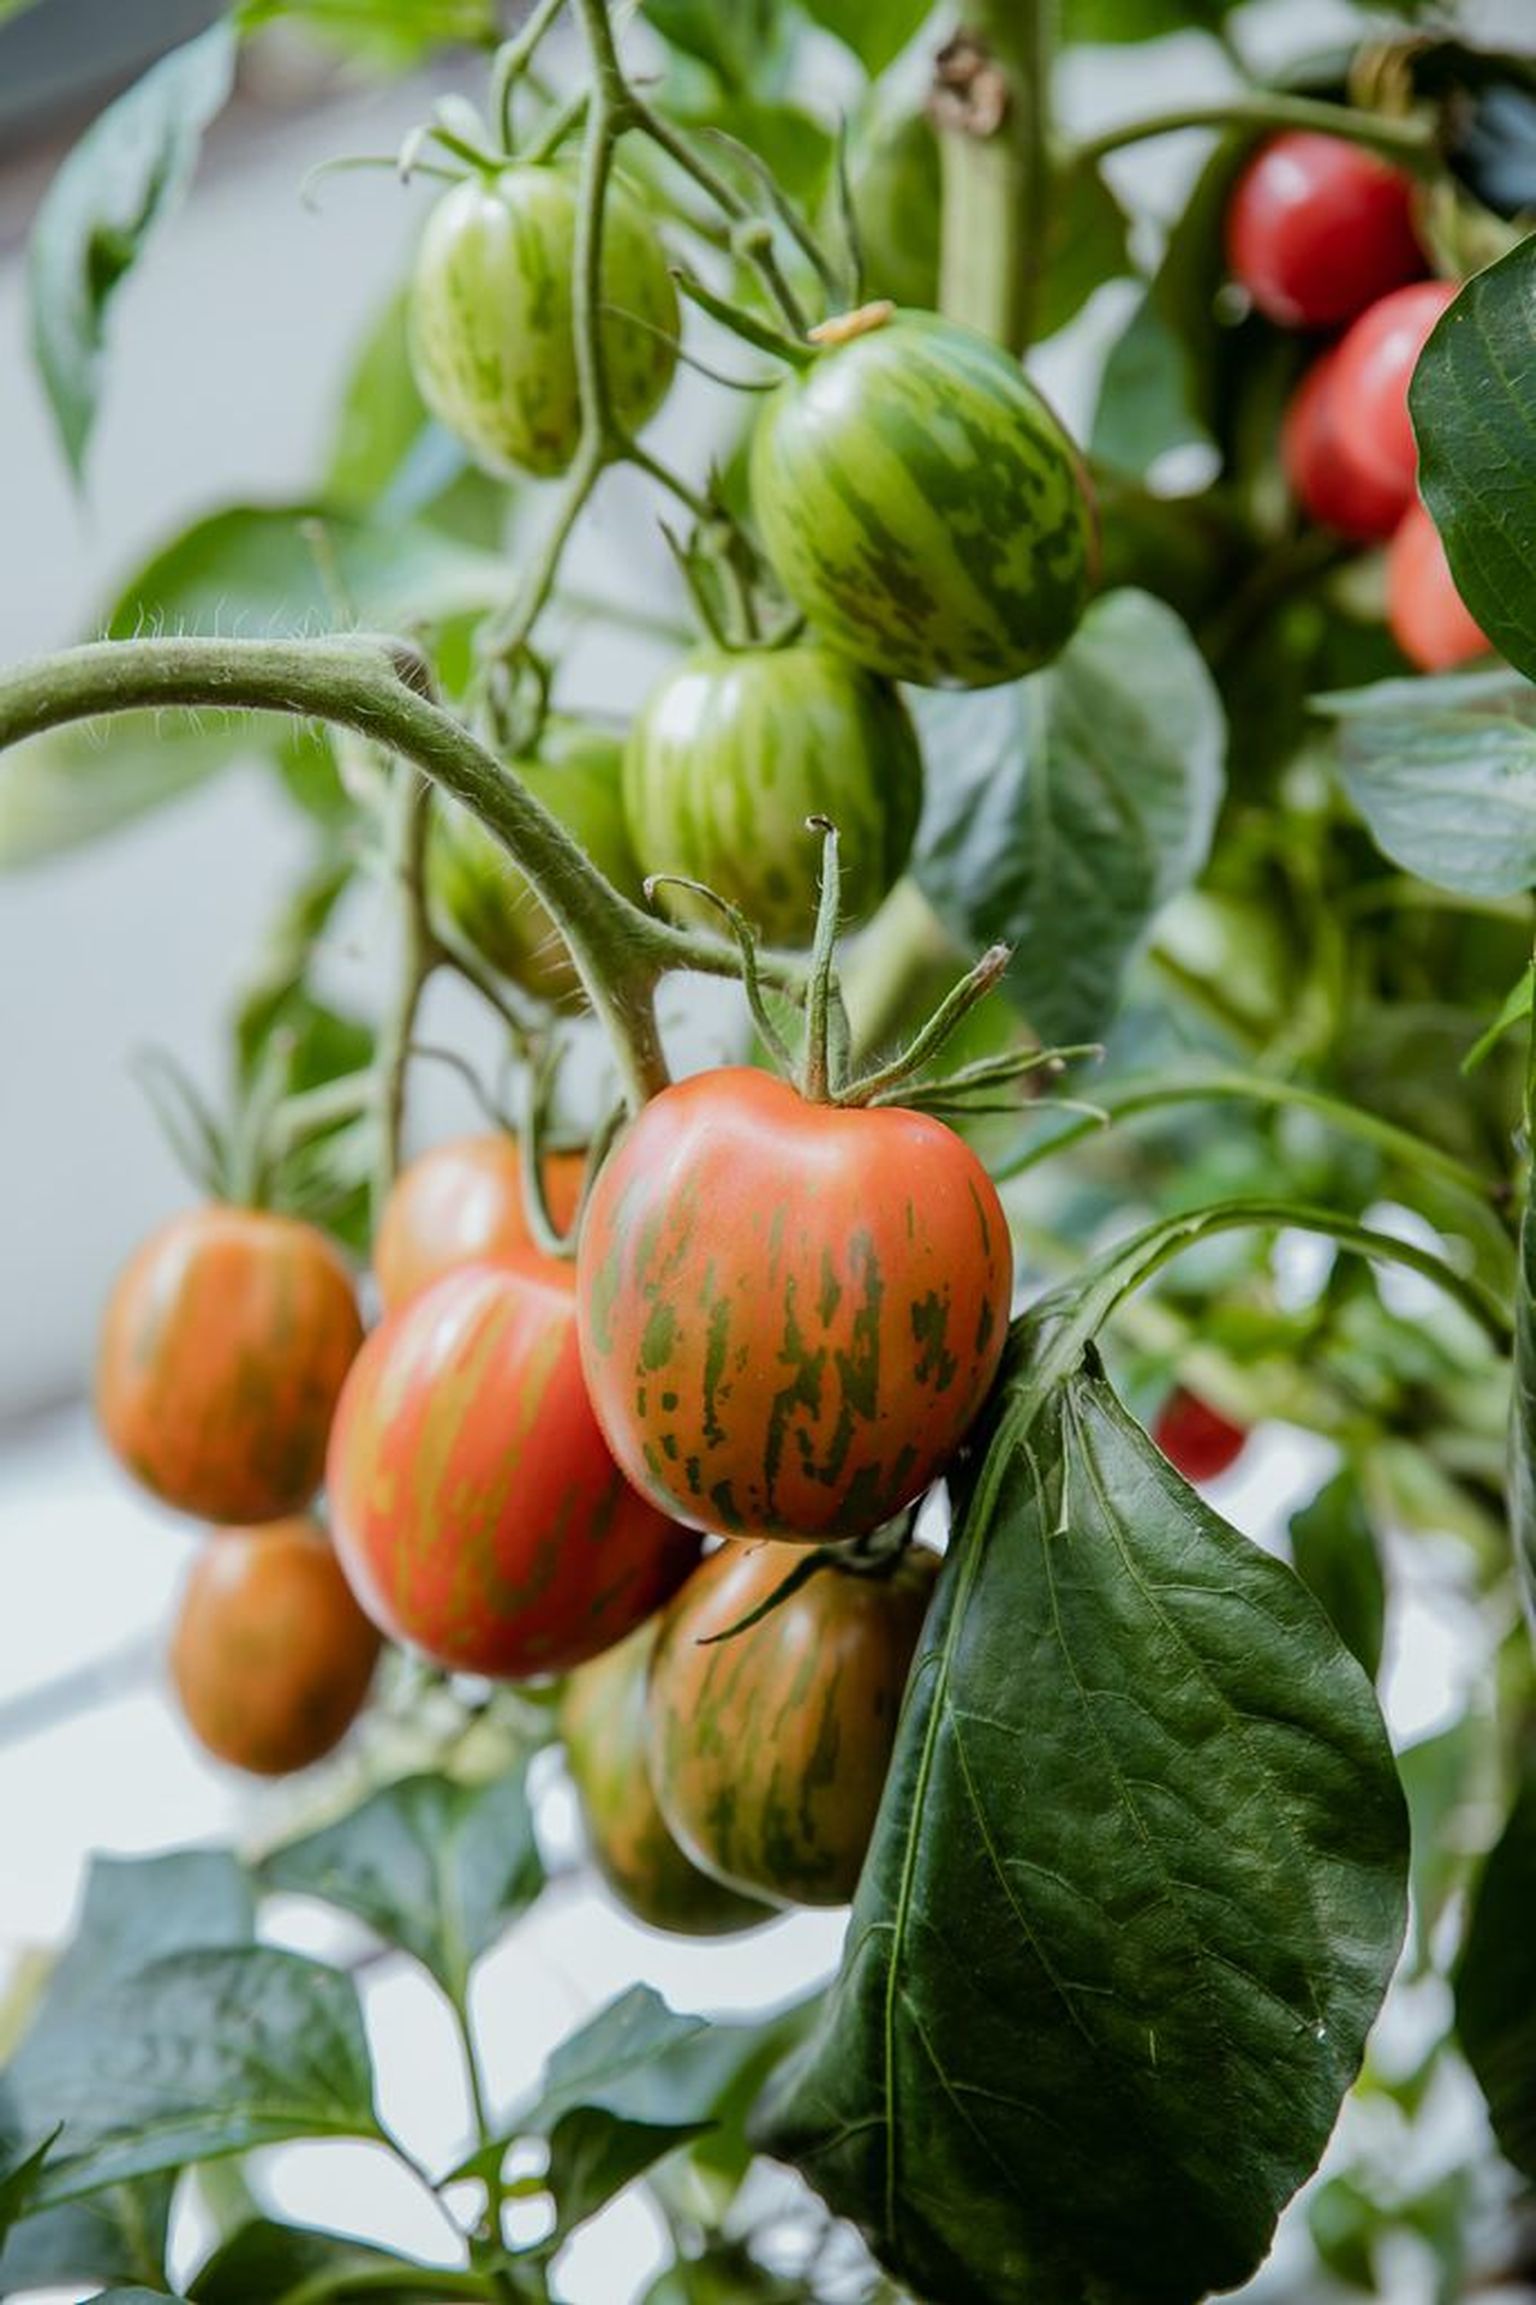 Iga aastaga tuleb müügile järjest uusi tomatisorte, mida põnev katsetada.